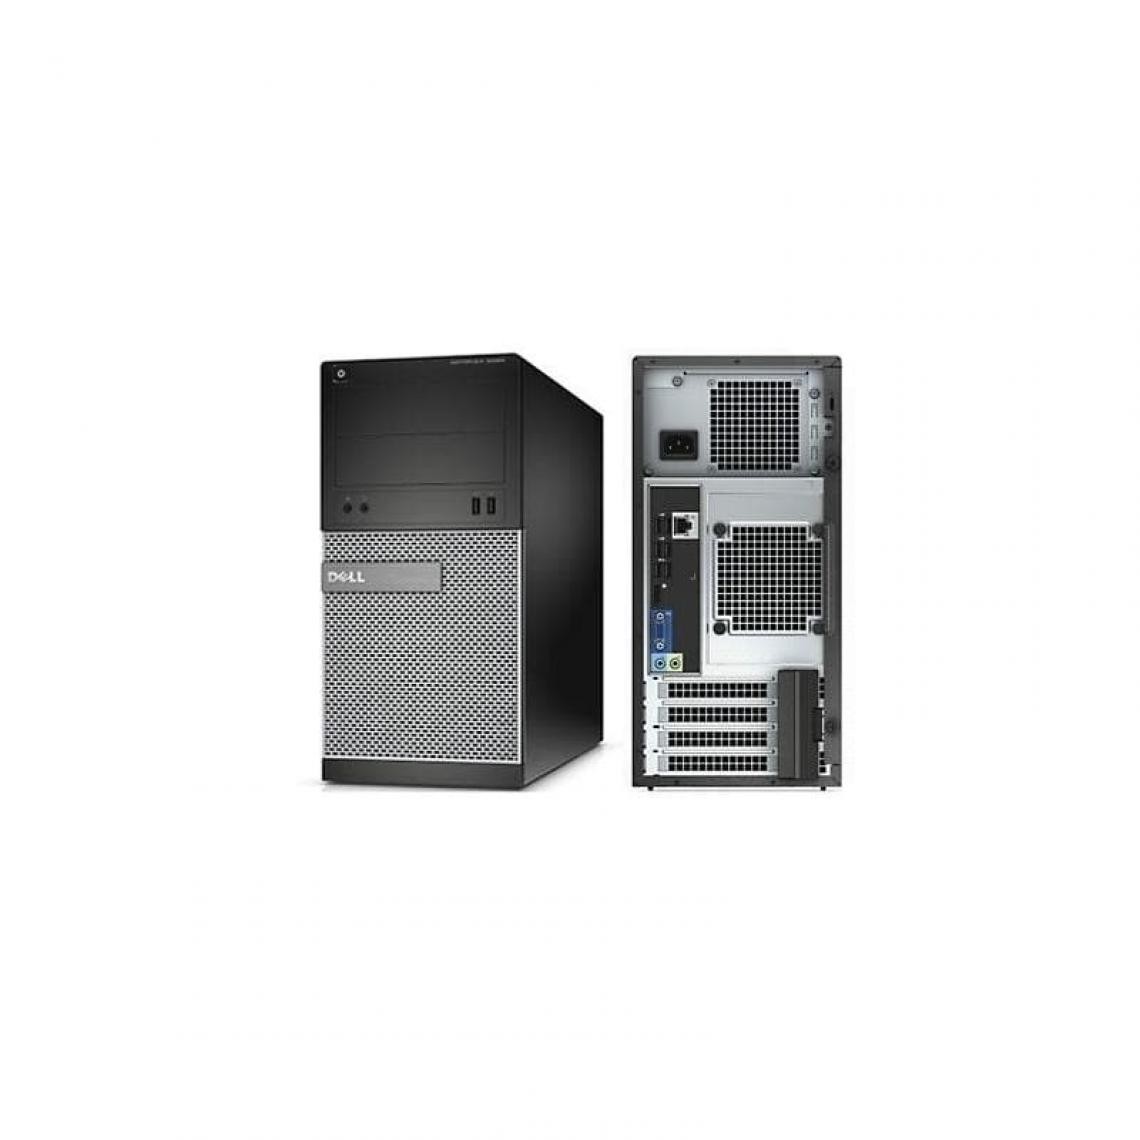 Dell - DELL OPTIPLEX 3010 TOWER CELERON G1610 2.6GHZ - PC Fixe